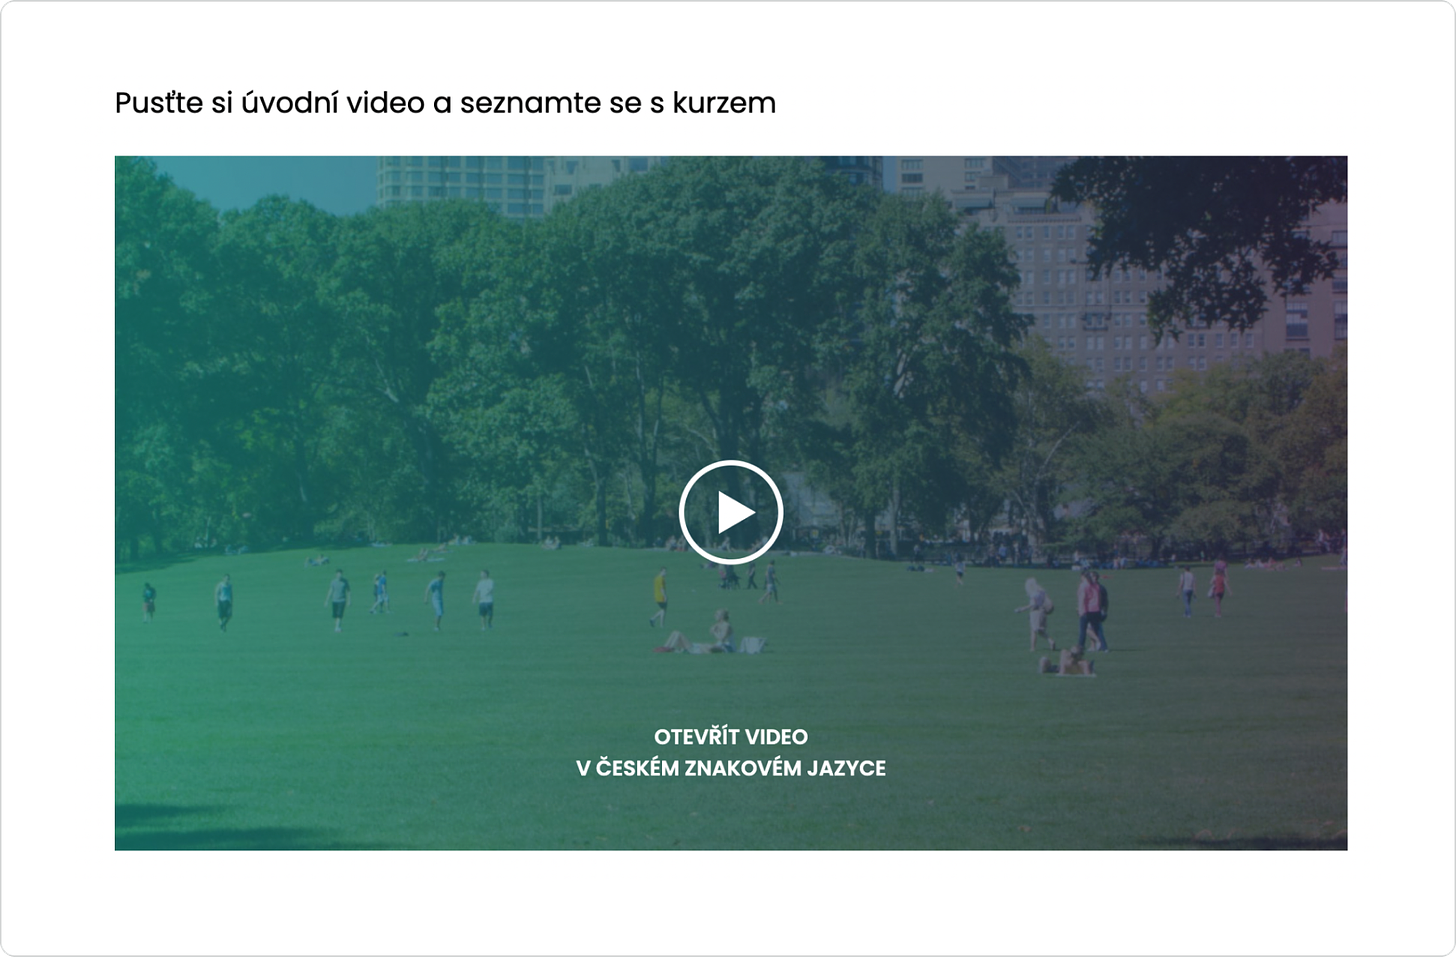 Snímek obrazovky s náhledem videa s nesprávným umístěním odkazu (uvnitř videa) na verzi ve znakovém jazyce.